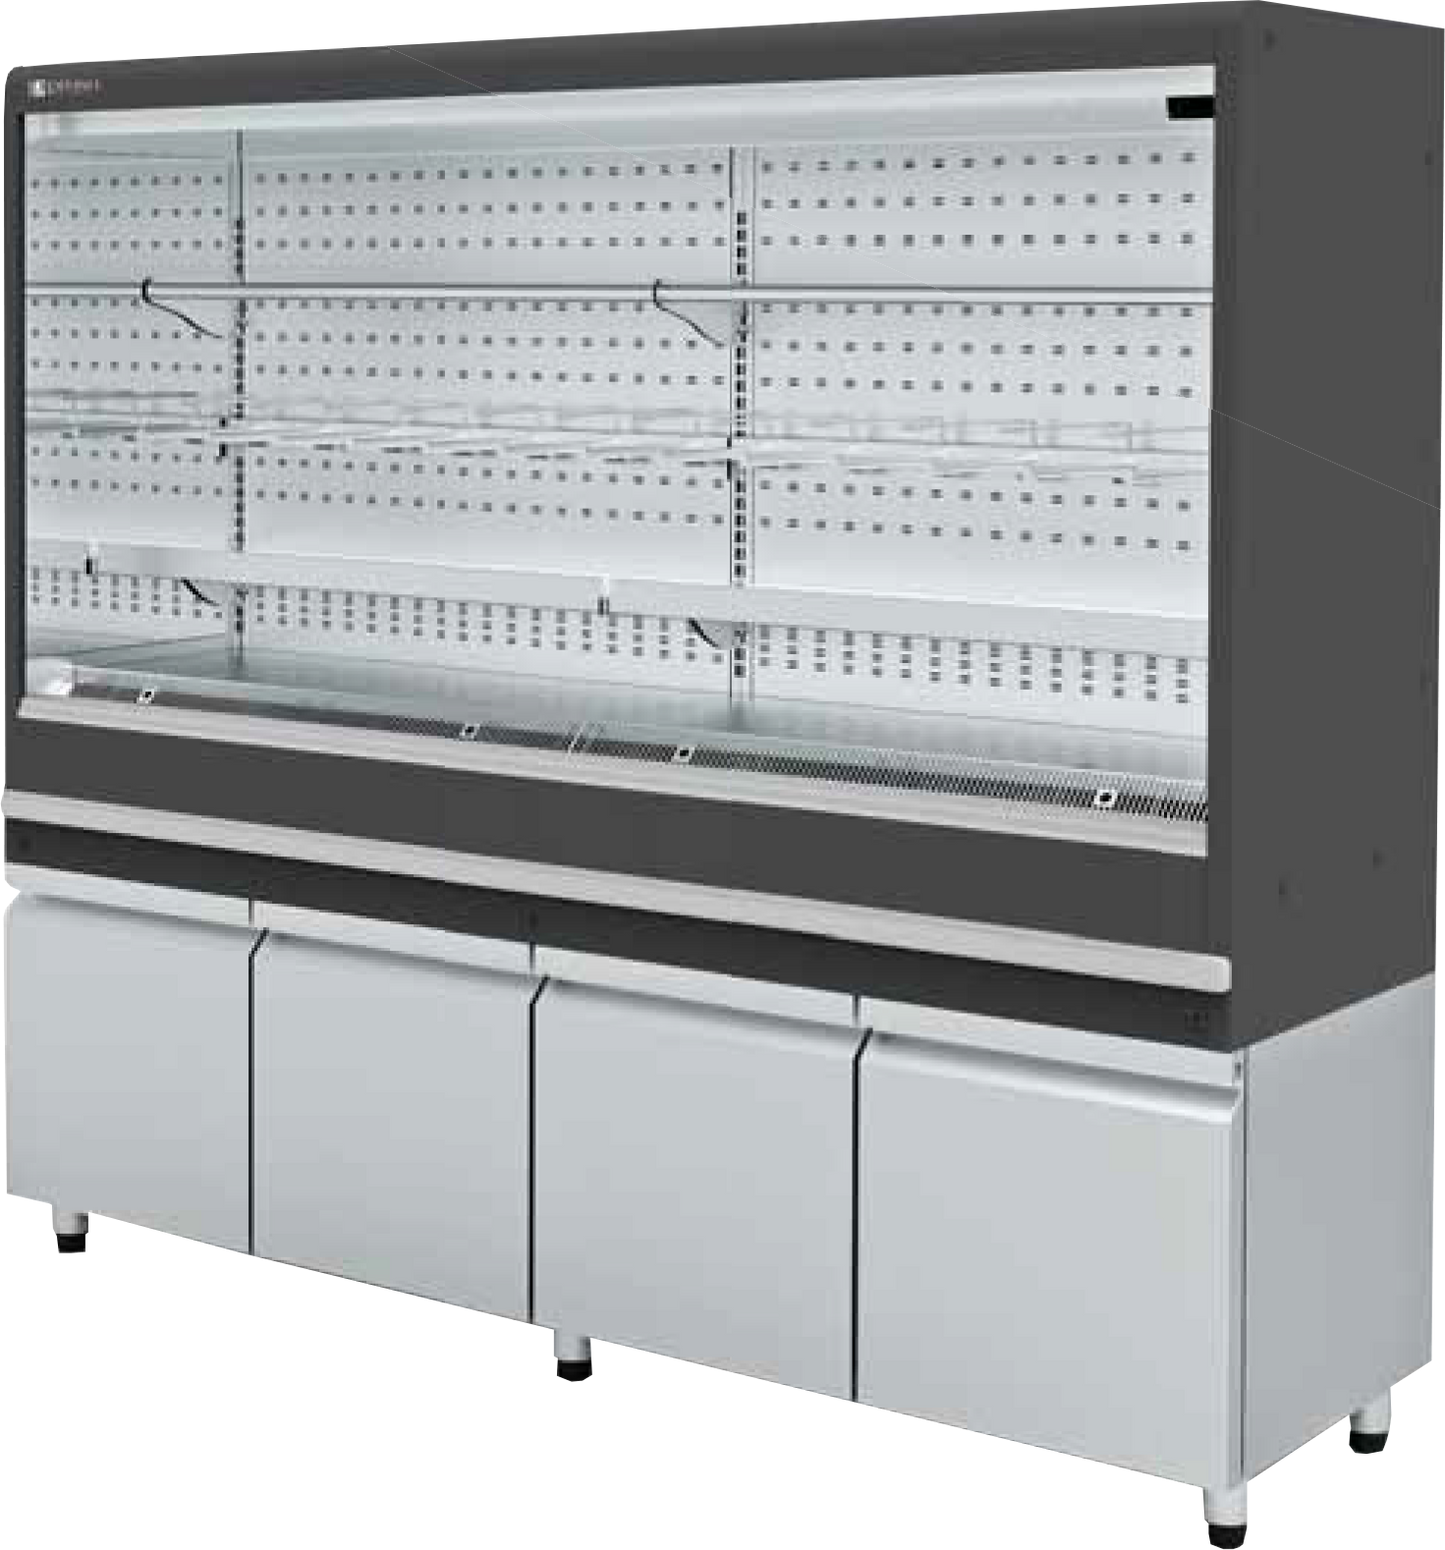 Remote Open Merchandiser With Bottom Refrigerated Storage